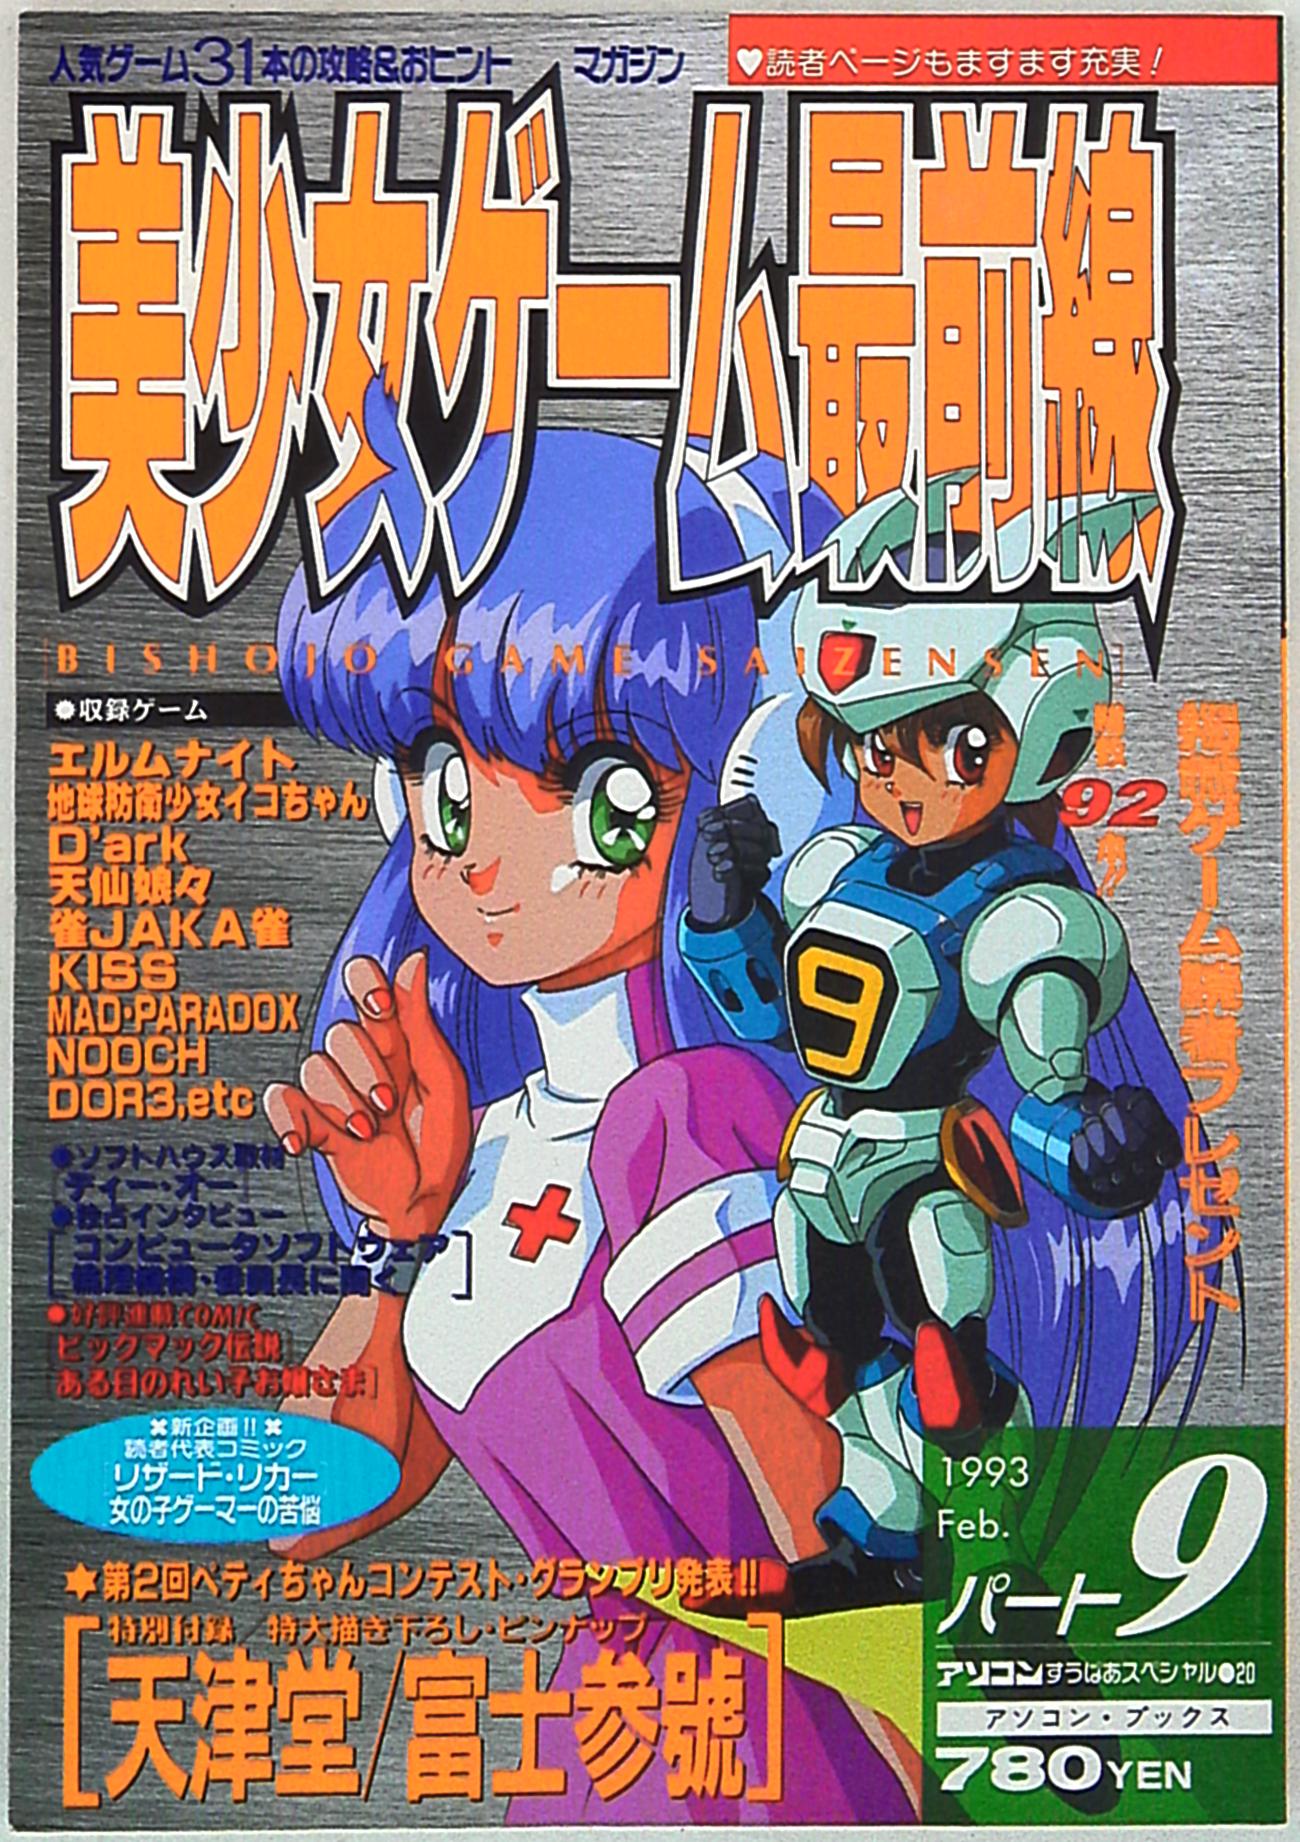 買い銀座ゲーム資料集 パソコンゲーム80年代記 辰巳出版 その他